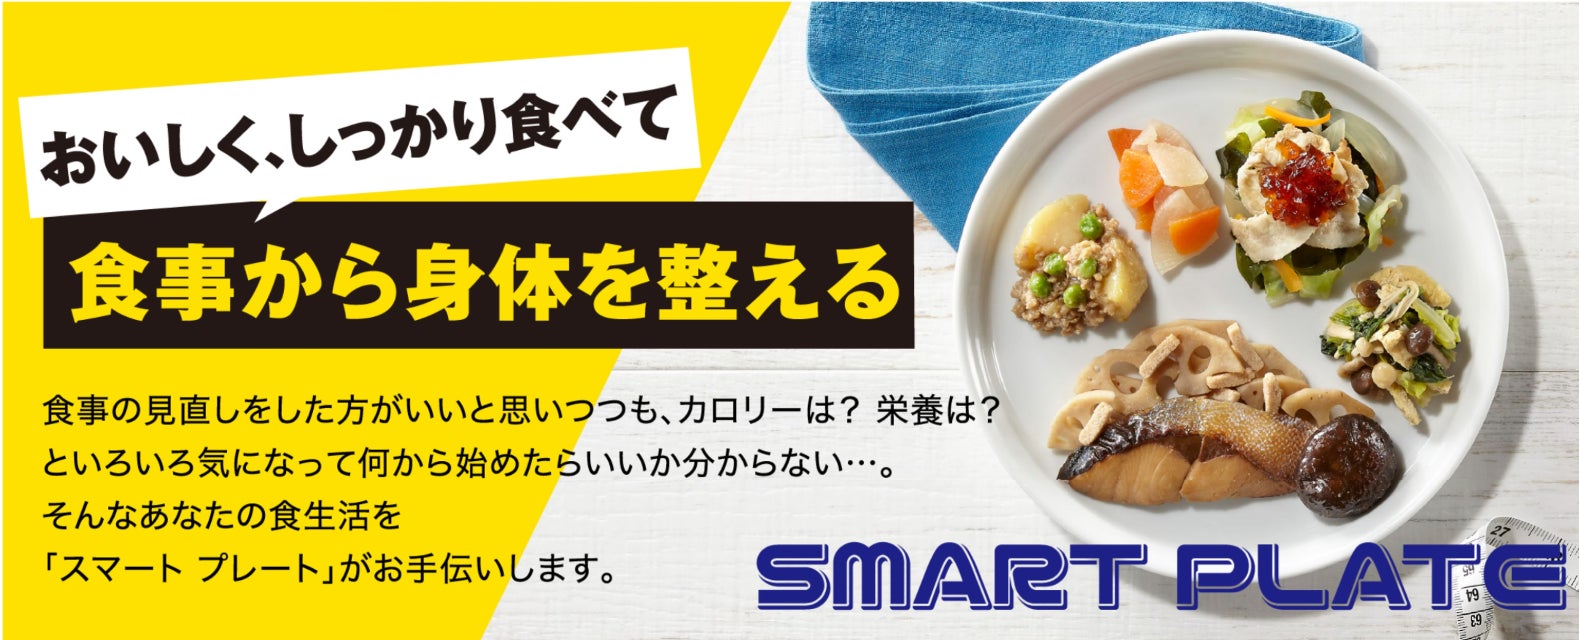 食事から身体を整えたい方向けの新商品「SMART PLATE」を販売開始！！